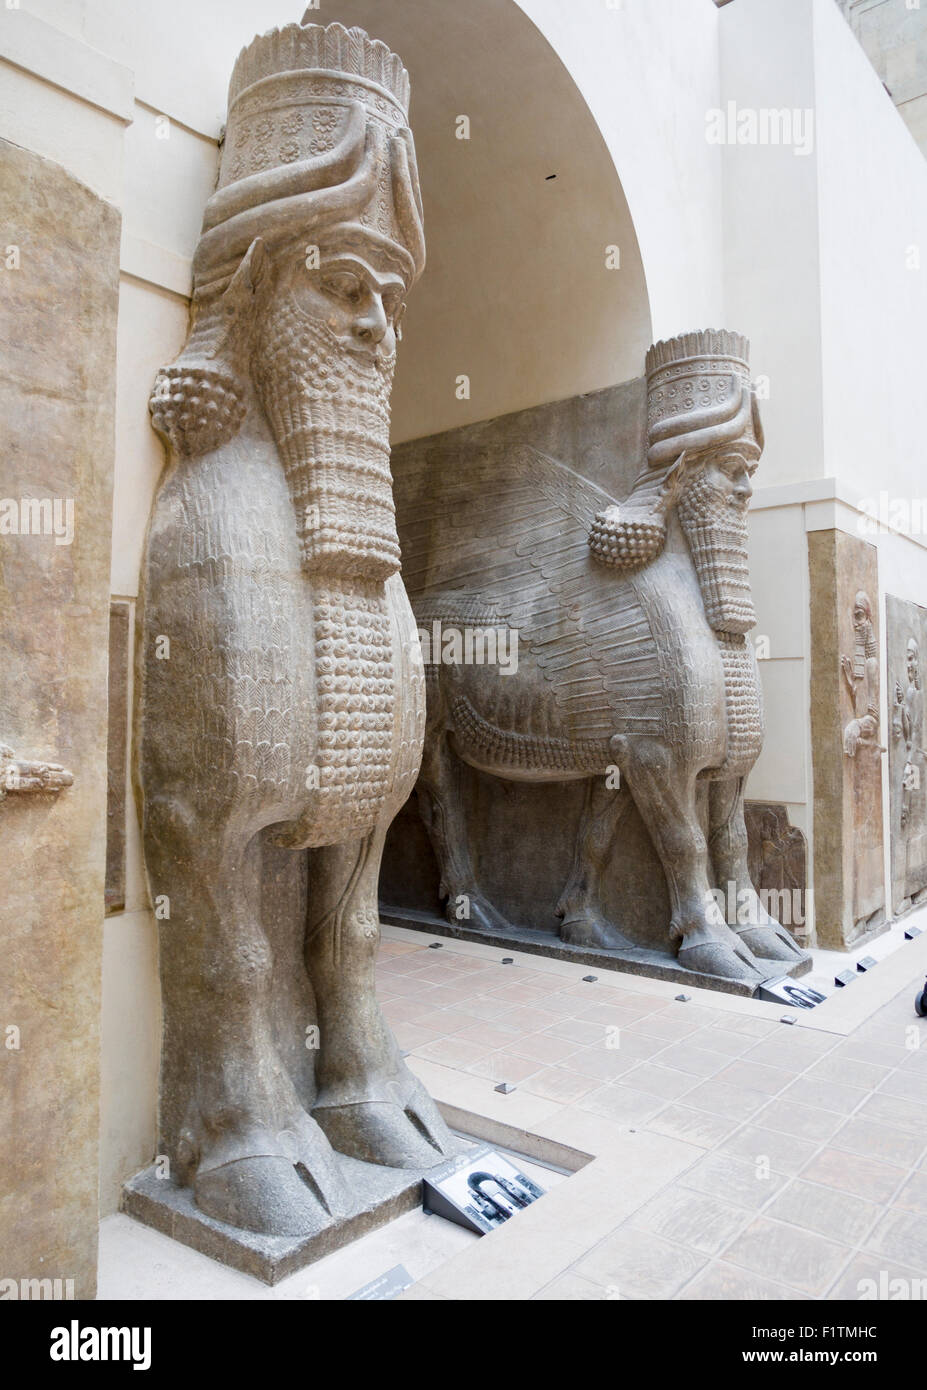 Uomo alato capo-tori a guardia della arch. Originariamente parte di Sargon II capitale della Dur Sharrukin, ora Khorsabad. Foto Stock